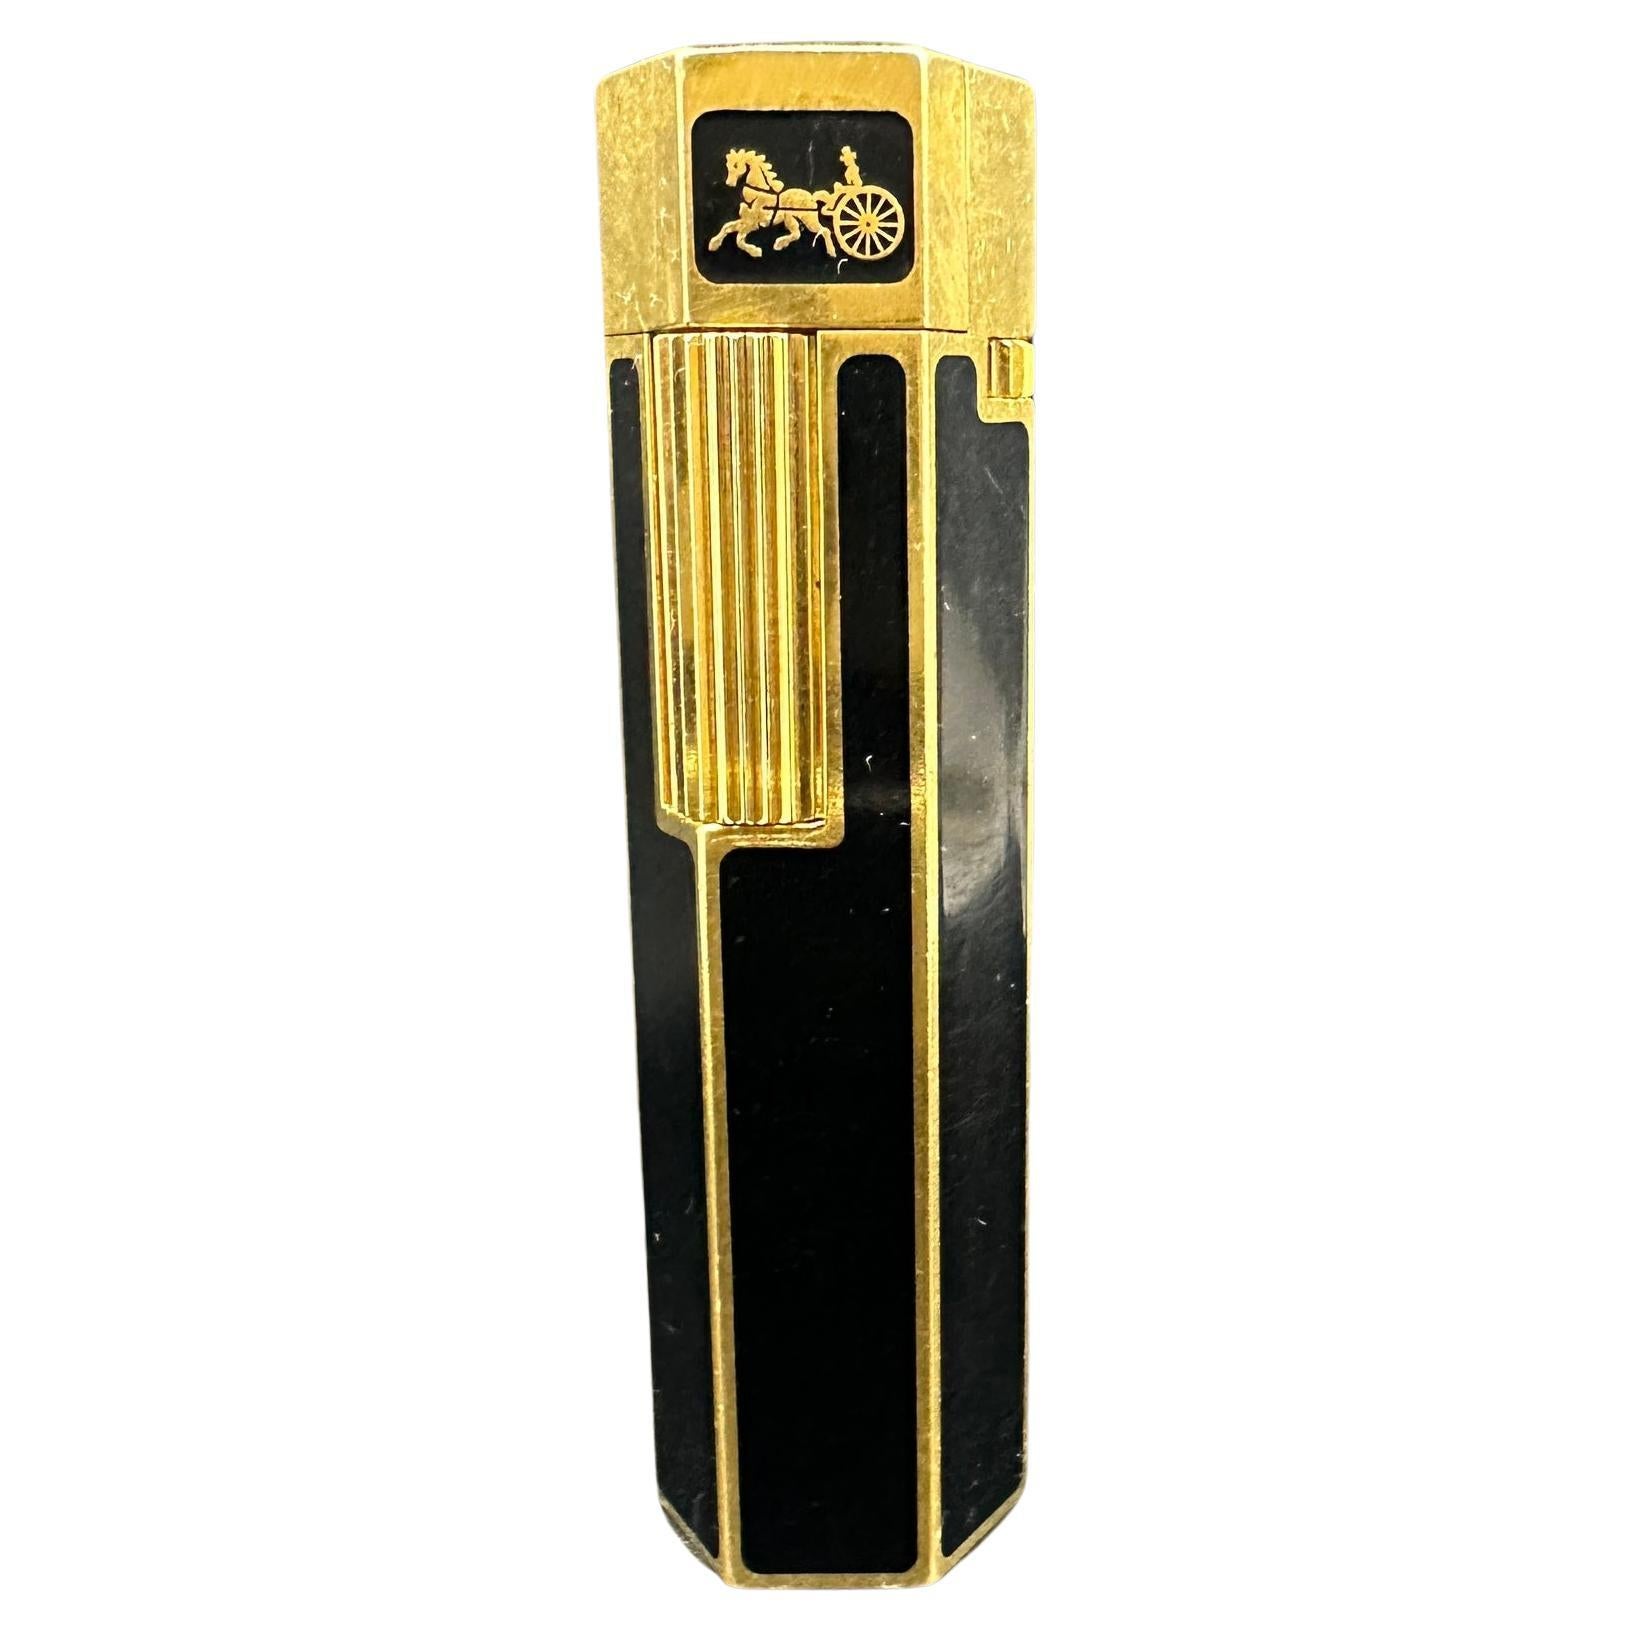 Celine Circa 1980s Hexagonal Black Lacquer & Gold Vintage Lighter, Rare, Retro 